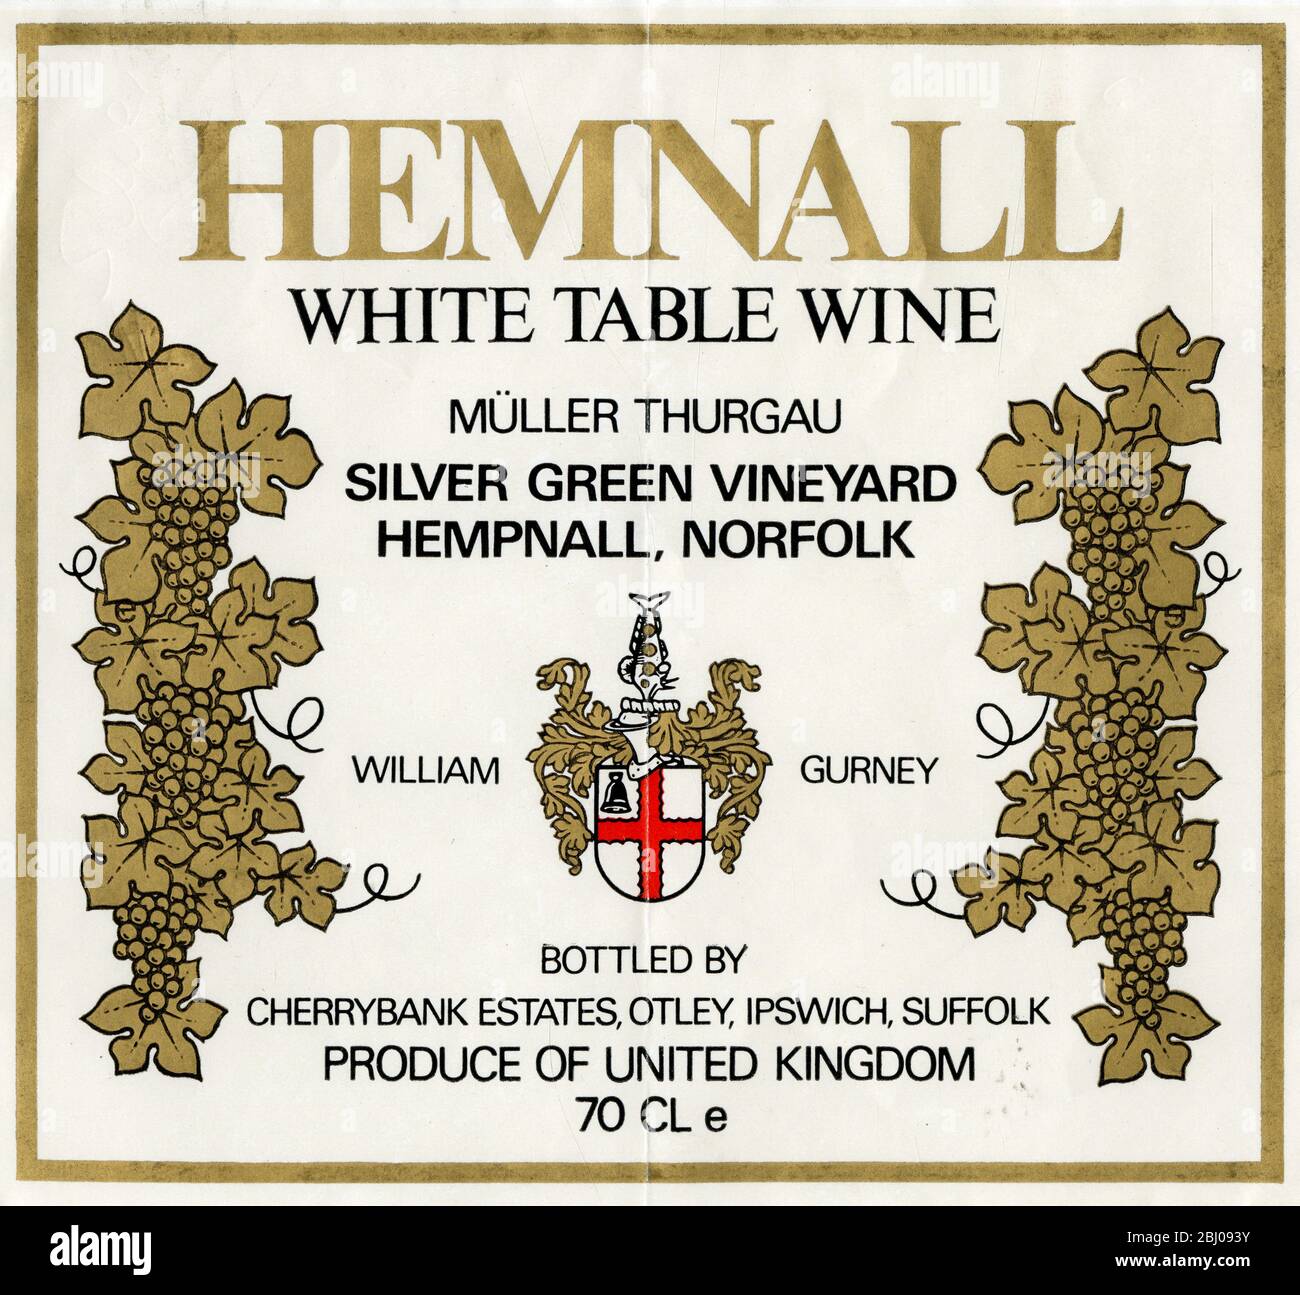 Etichetta vino - vino da tavola bianco Hemnall. Una varietà di vite Muller Thurgau prodotta da William Gurney di argento Green Vineyard, Hempnall, Norfolk. Foto Stock